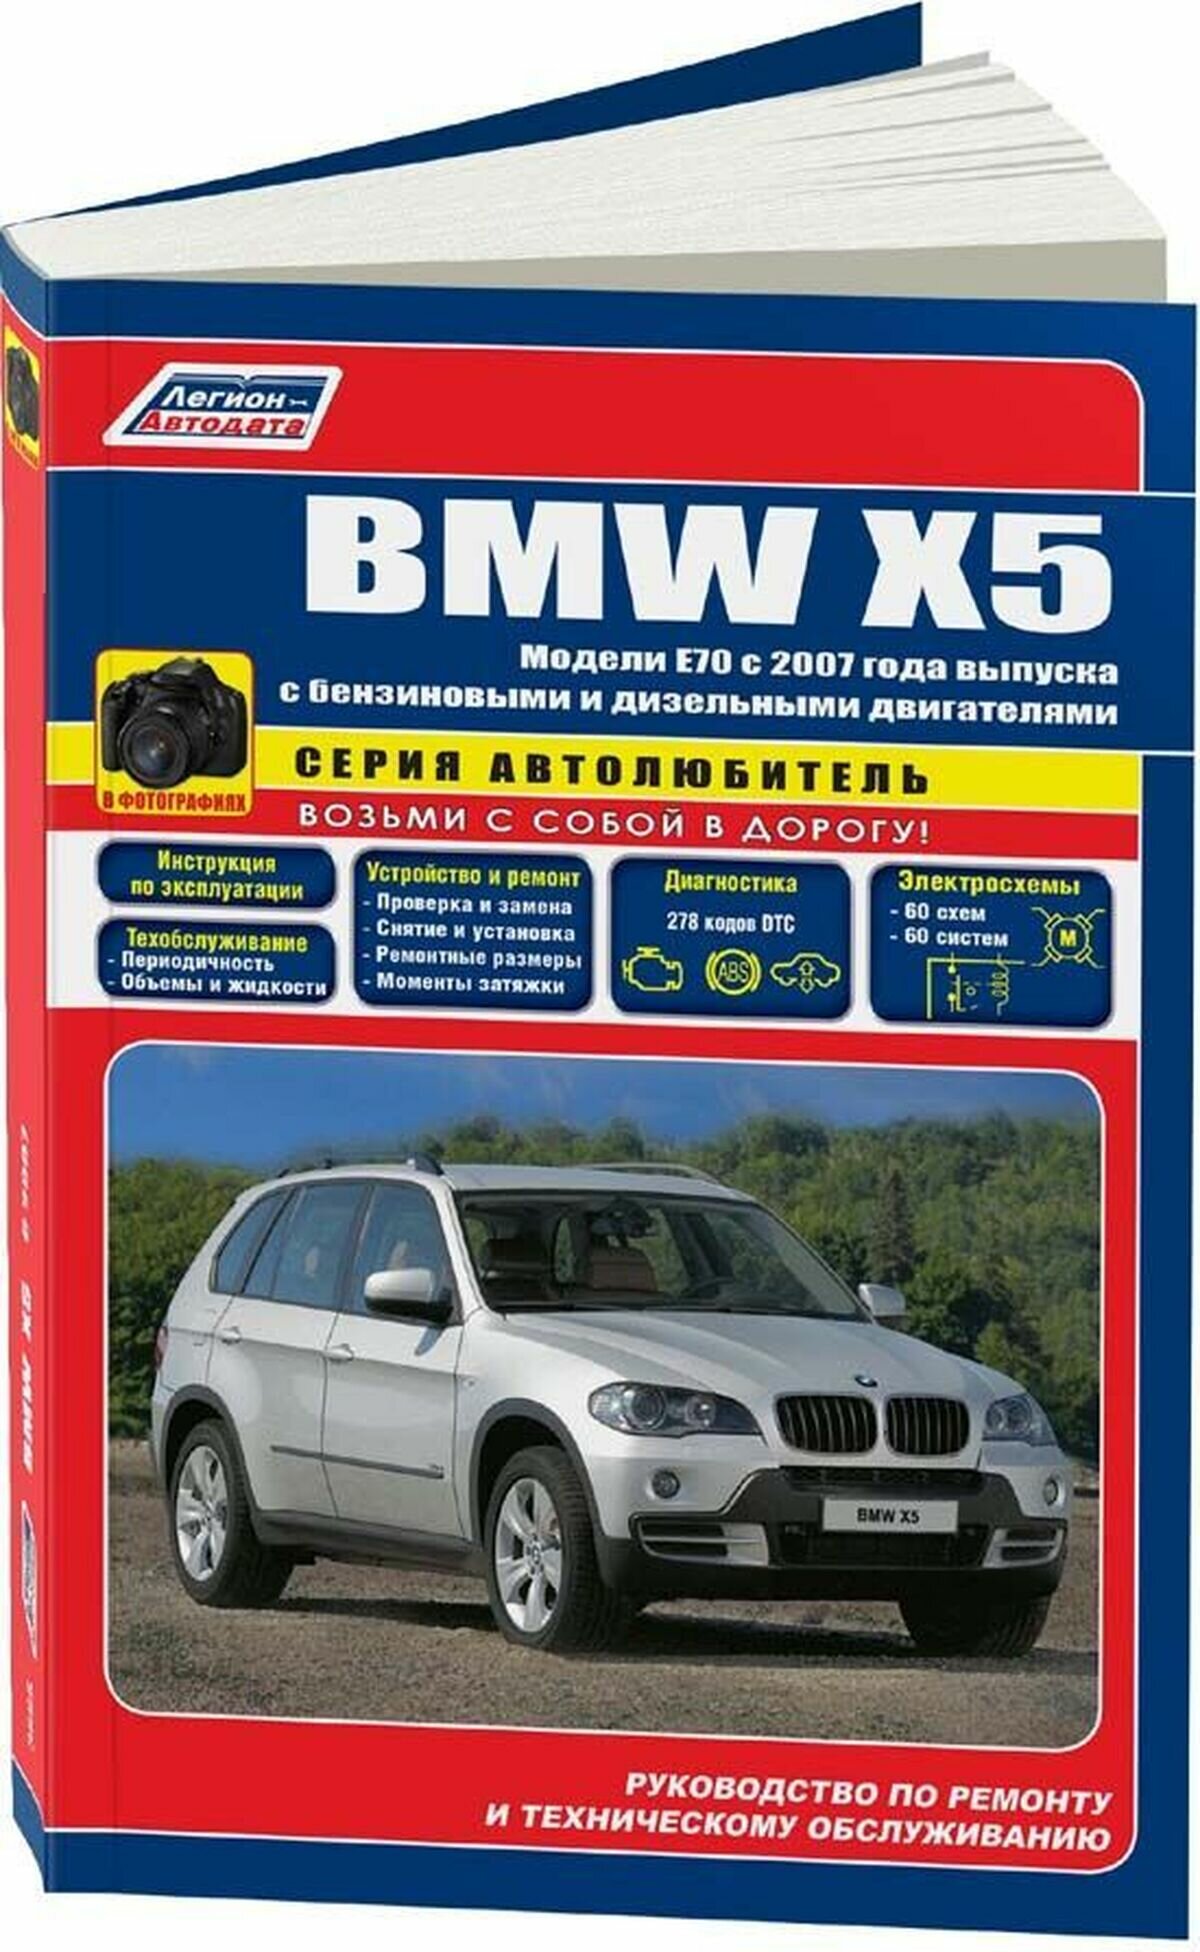 Автокнига: руководство / инструкция по эксплуатации и техническому обслуживанию BMW X5 (БМВ Х5) (E70) бензин / дизель c 2007 года выпуска, 978-5-88850-425-3, издательство Легион-Aвтодата